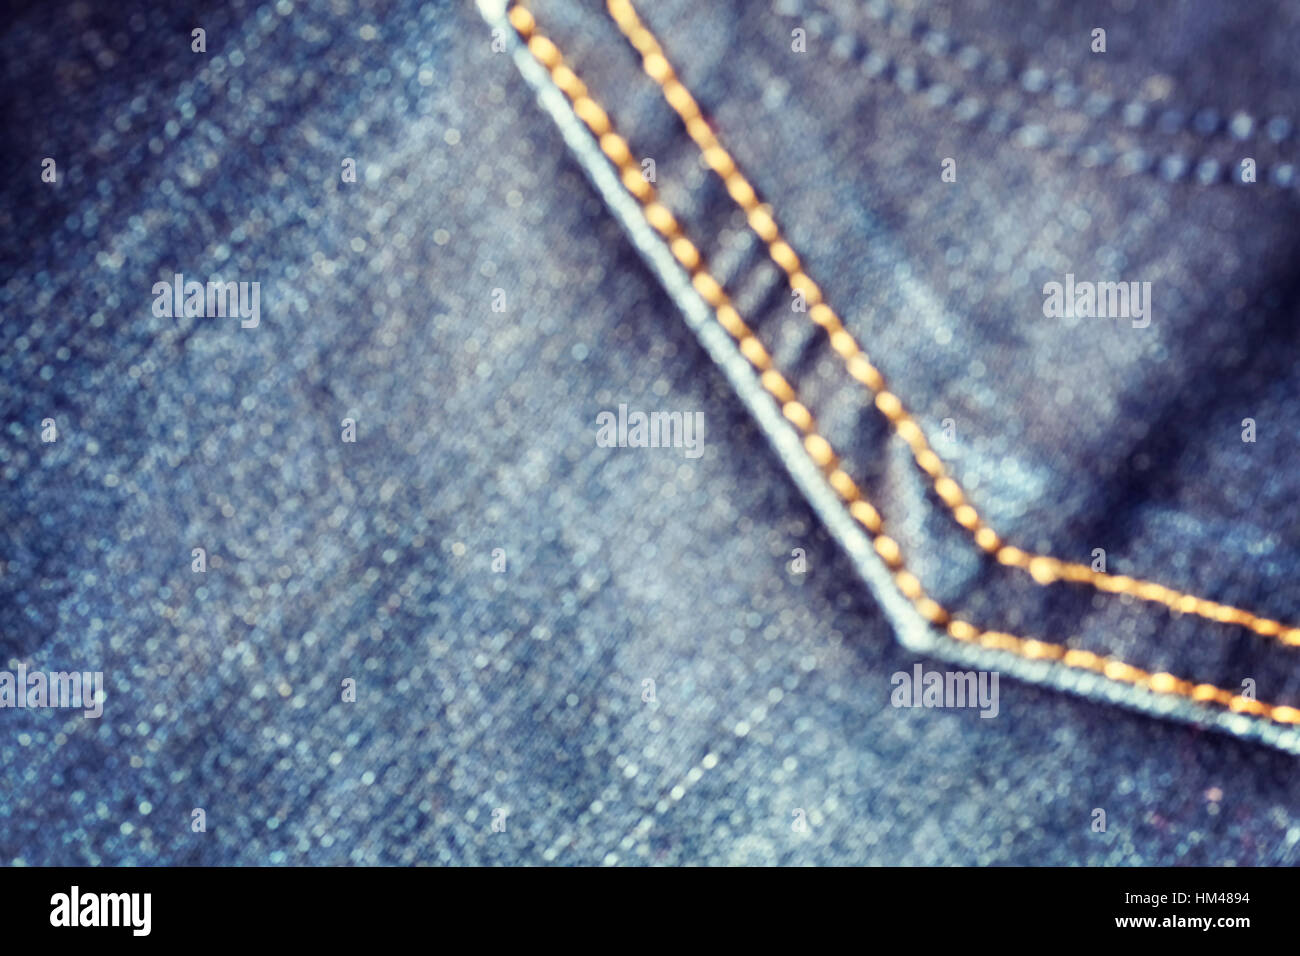 Cerrar imagen borrosa de blue jeans tejido con stitch, fondo abstracto. Foto de stock